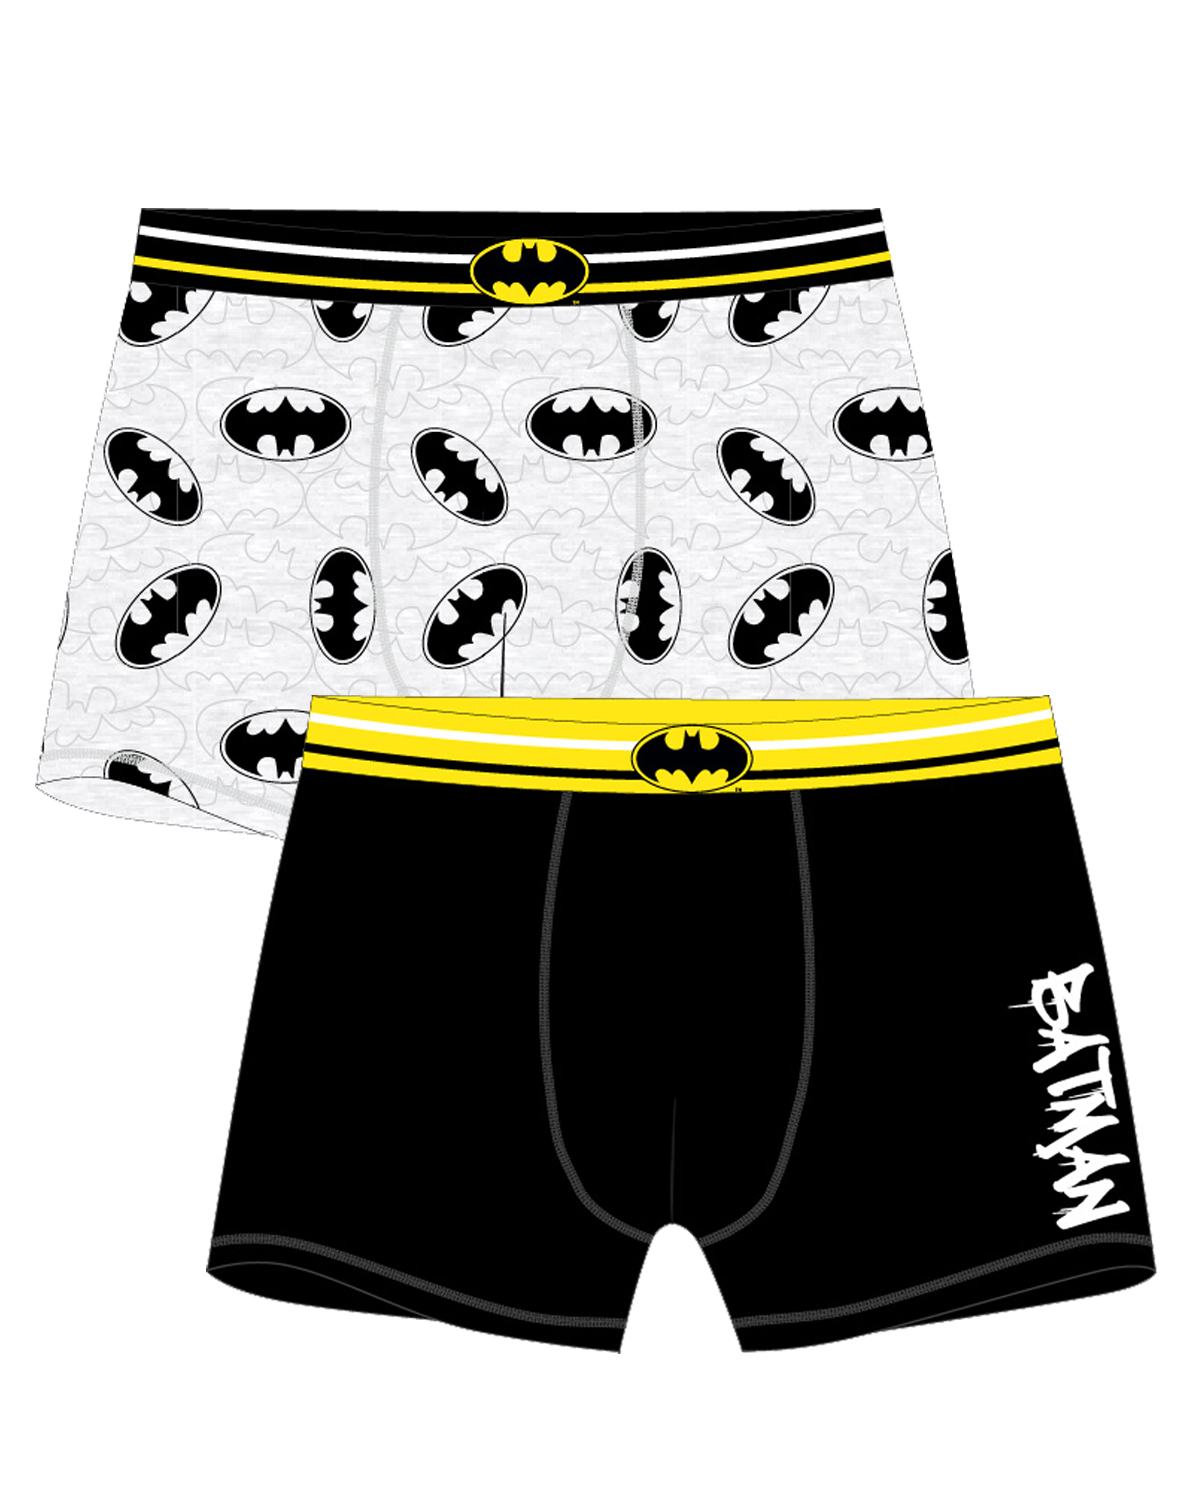 Batman - licence Pánské boxerky - Batman 5333527, černá / šedý melír Barva: Mix barev, Velikost: S